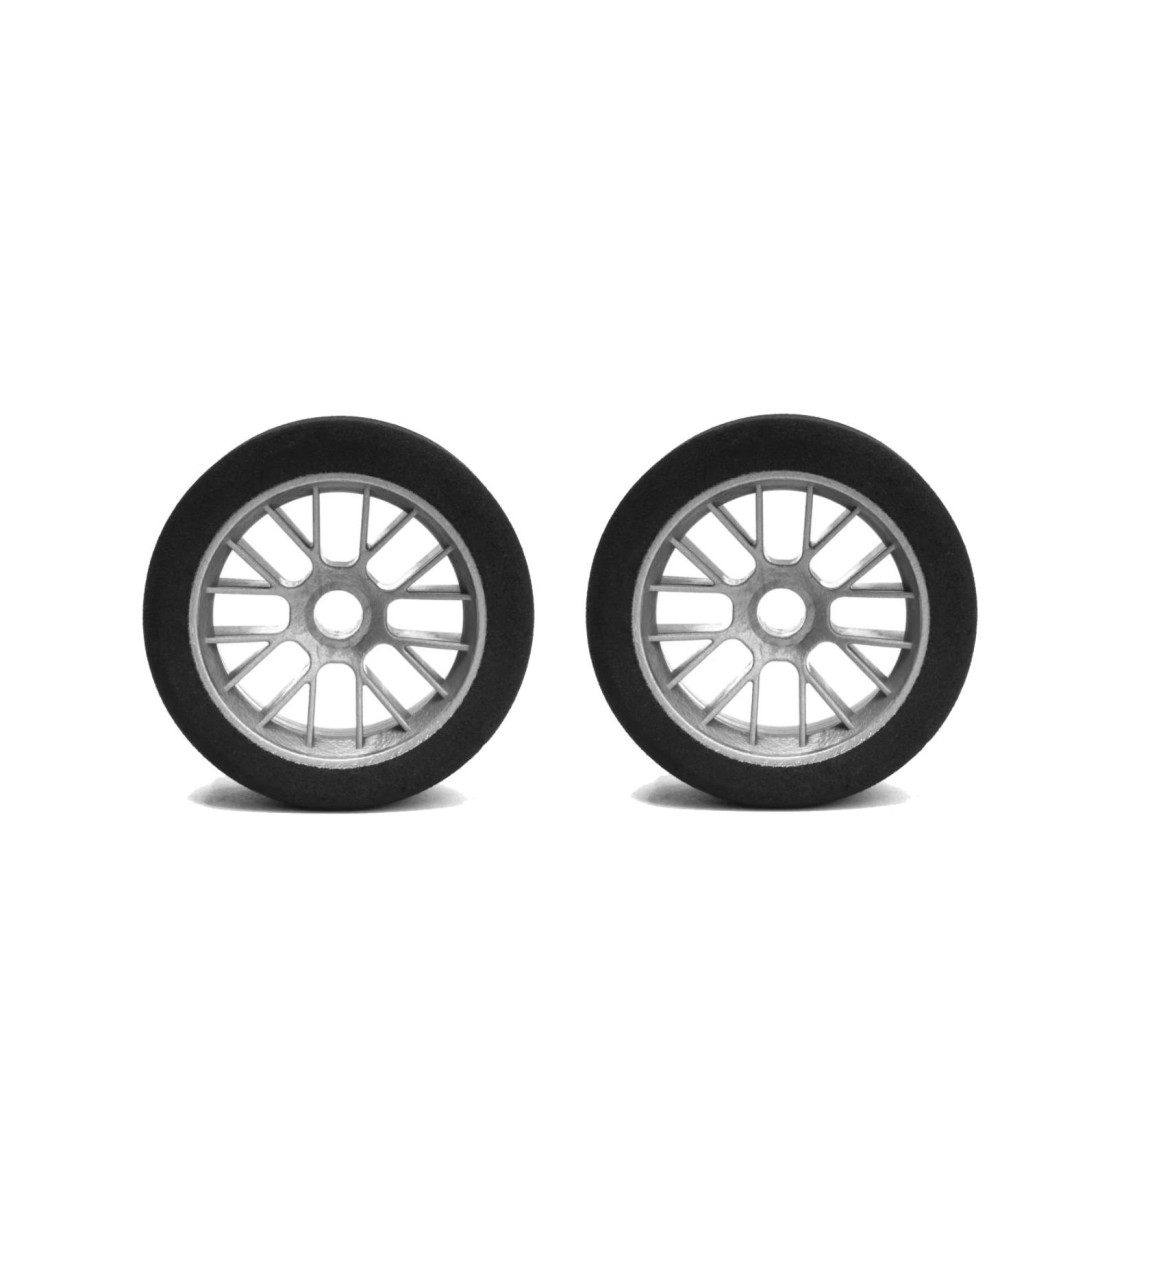 Hot Race Tires - 1:10 PanCar Foam Tires - front - 45 Shore (2 pcs)